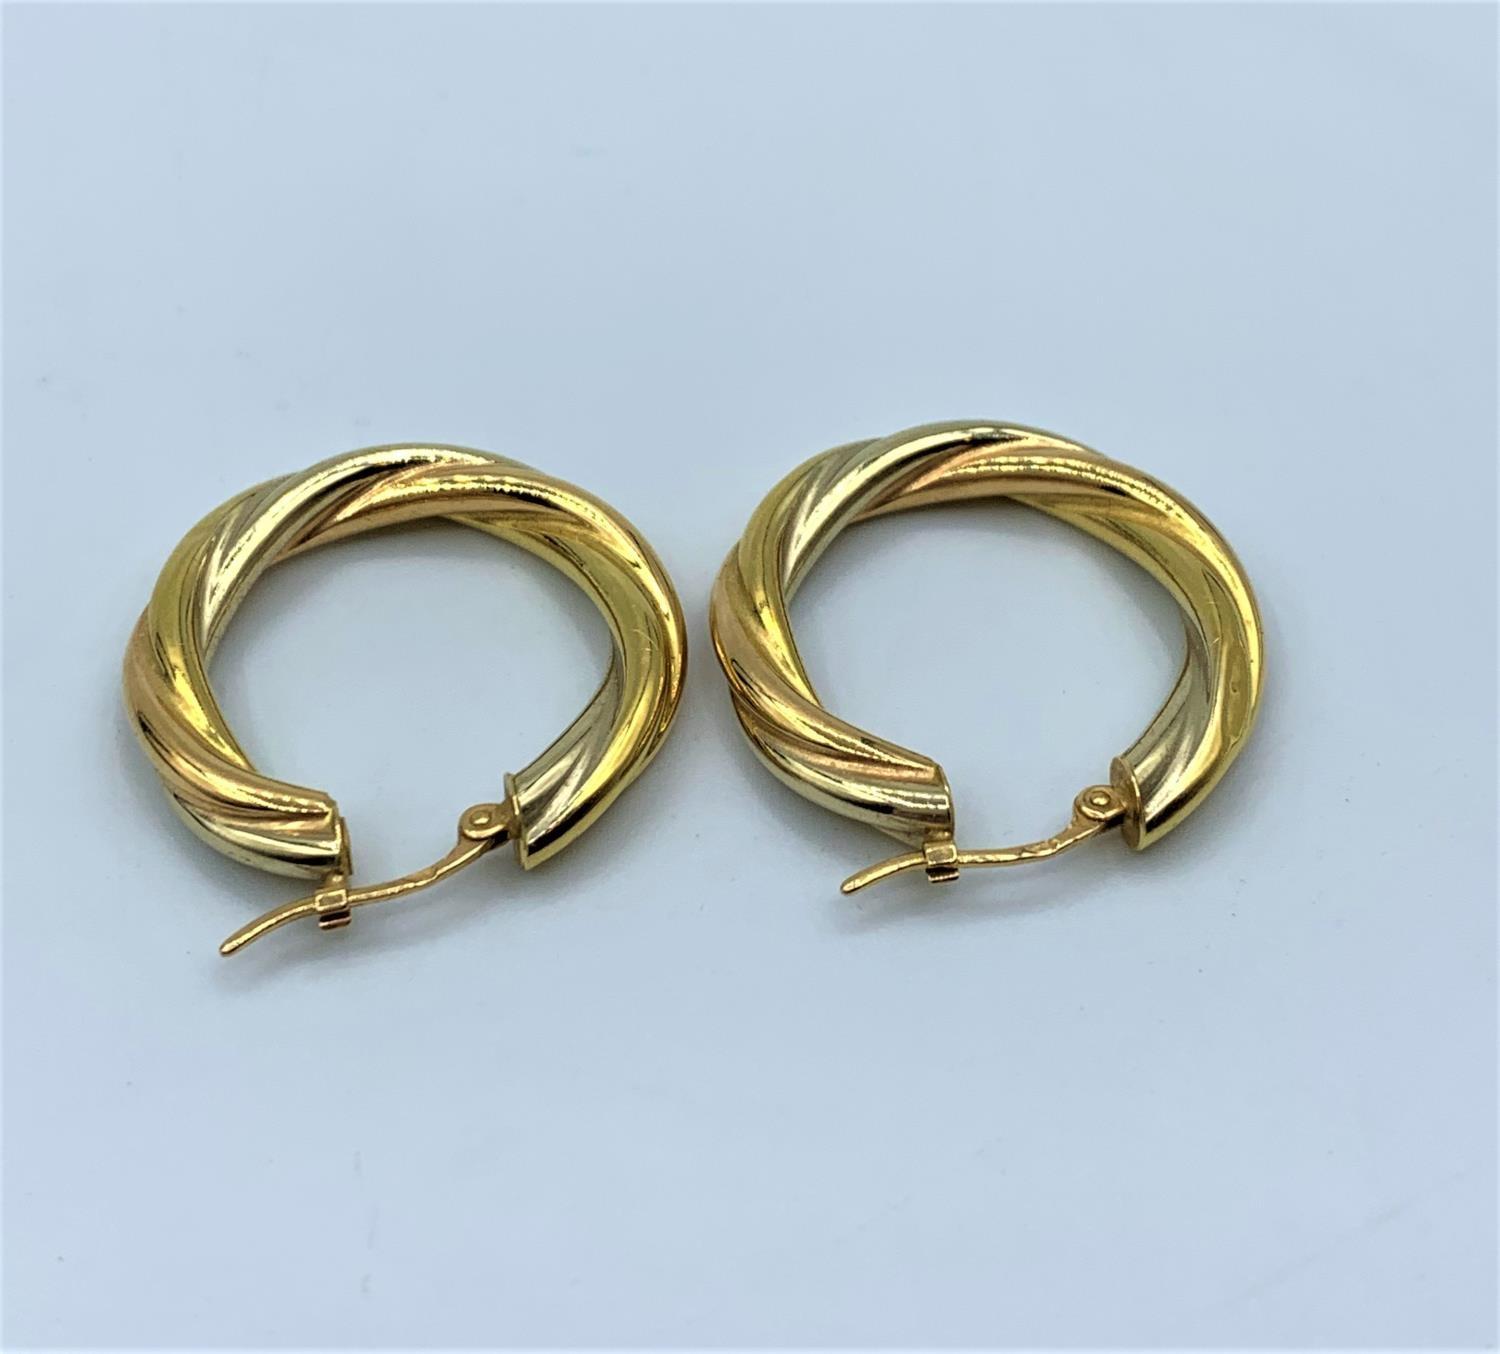 Pair of 18ct Twist Hoop Earrings, weight 2.4g - Image 2 of 3